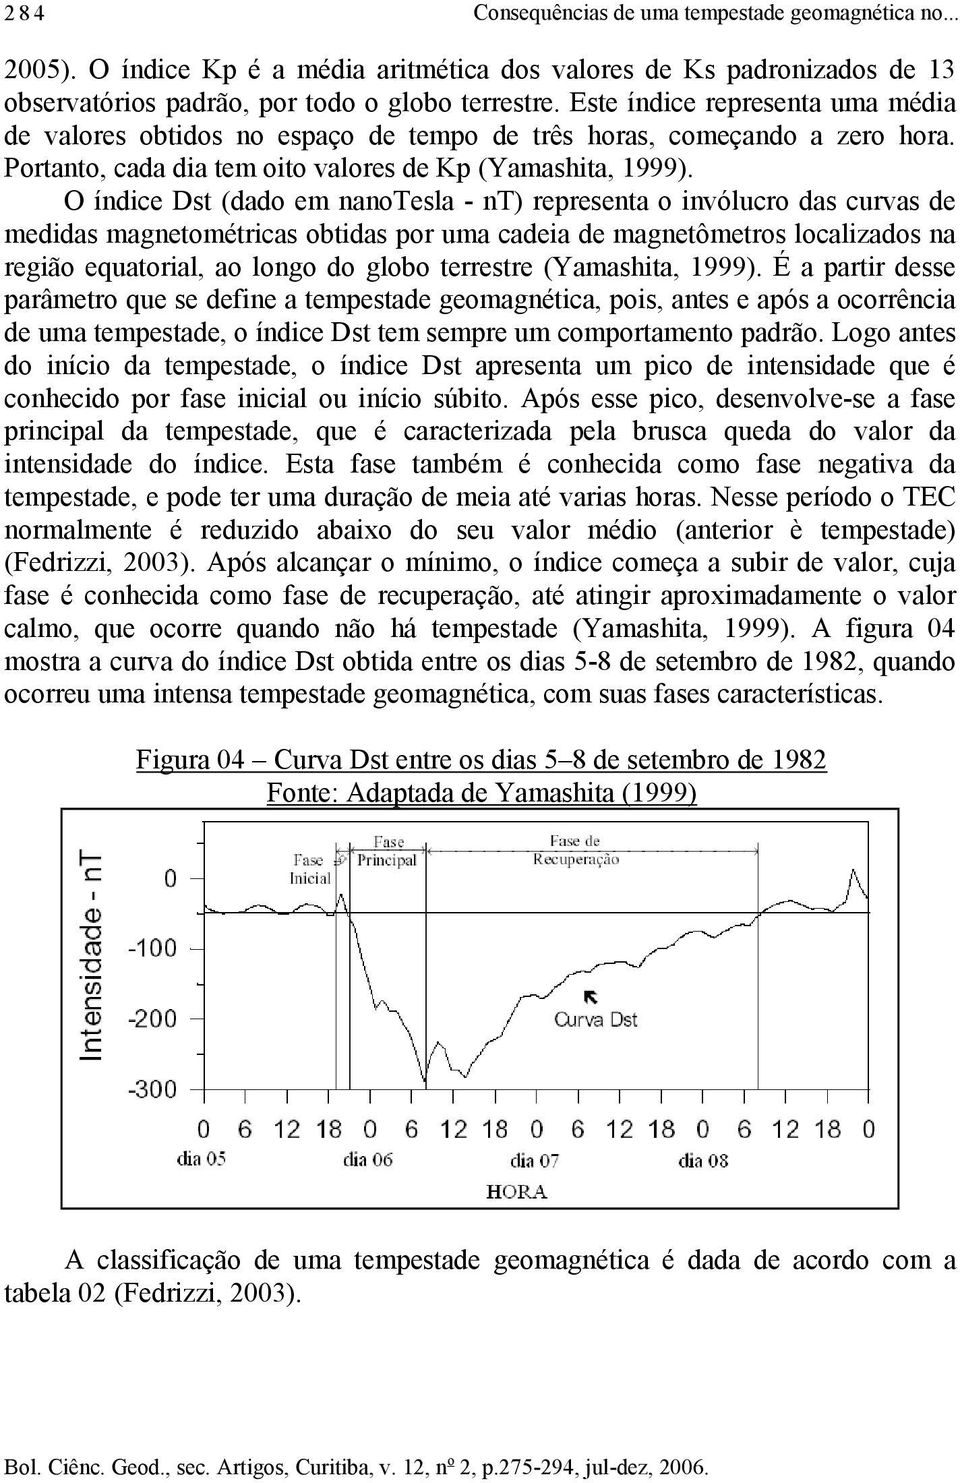 O índice Dst (dado em nanotesla - nt) representa o invólucro das curvas de medidas magnetométricas obtidas por uma cadeia de magnetômetros localizados na região equatorial, ao longo do globo